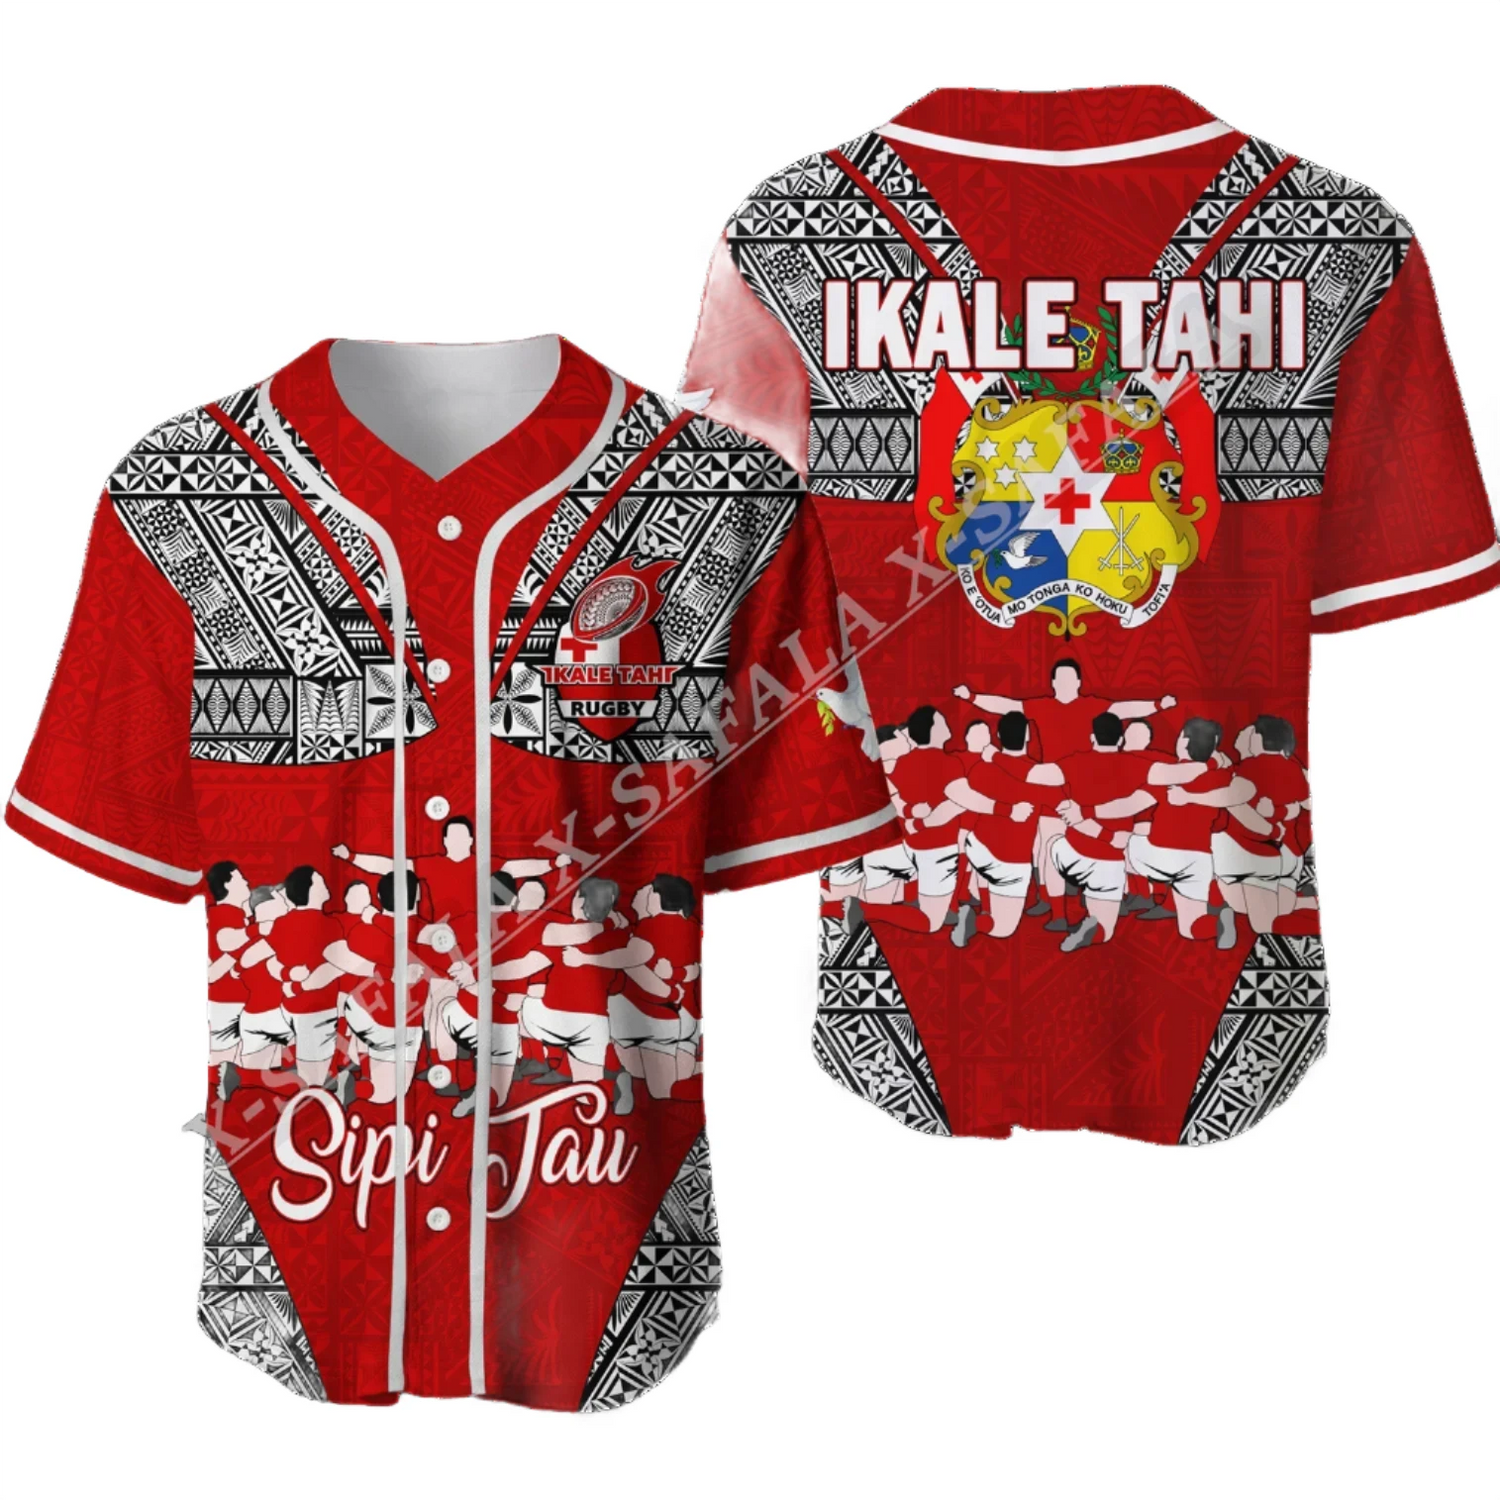 Ikale Tahi Tonga Rugby T Shirt